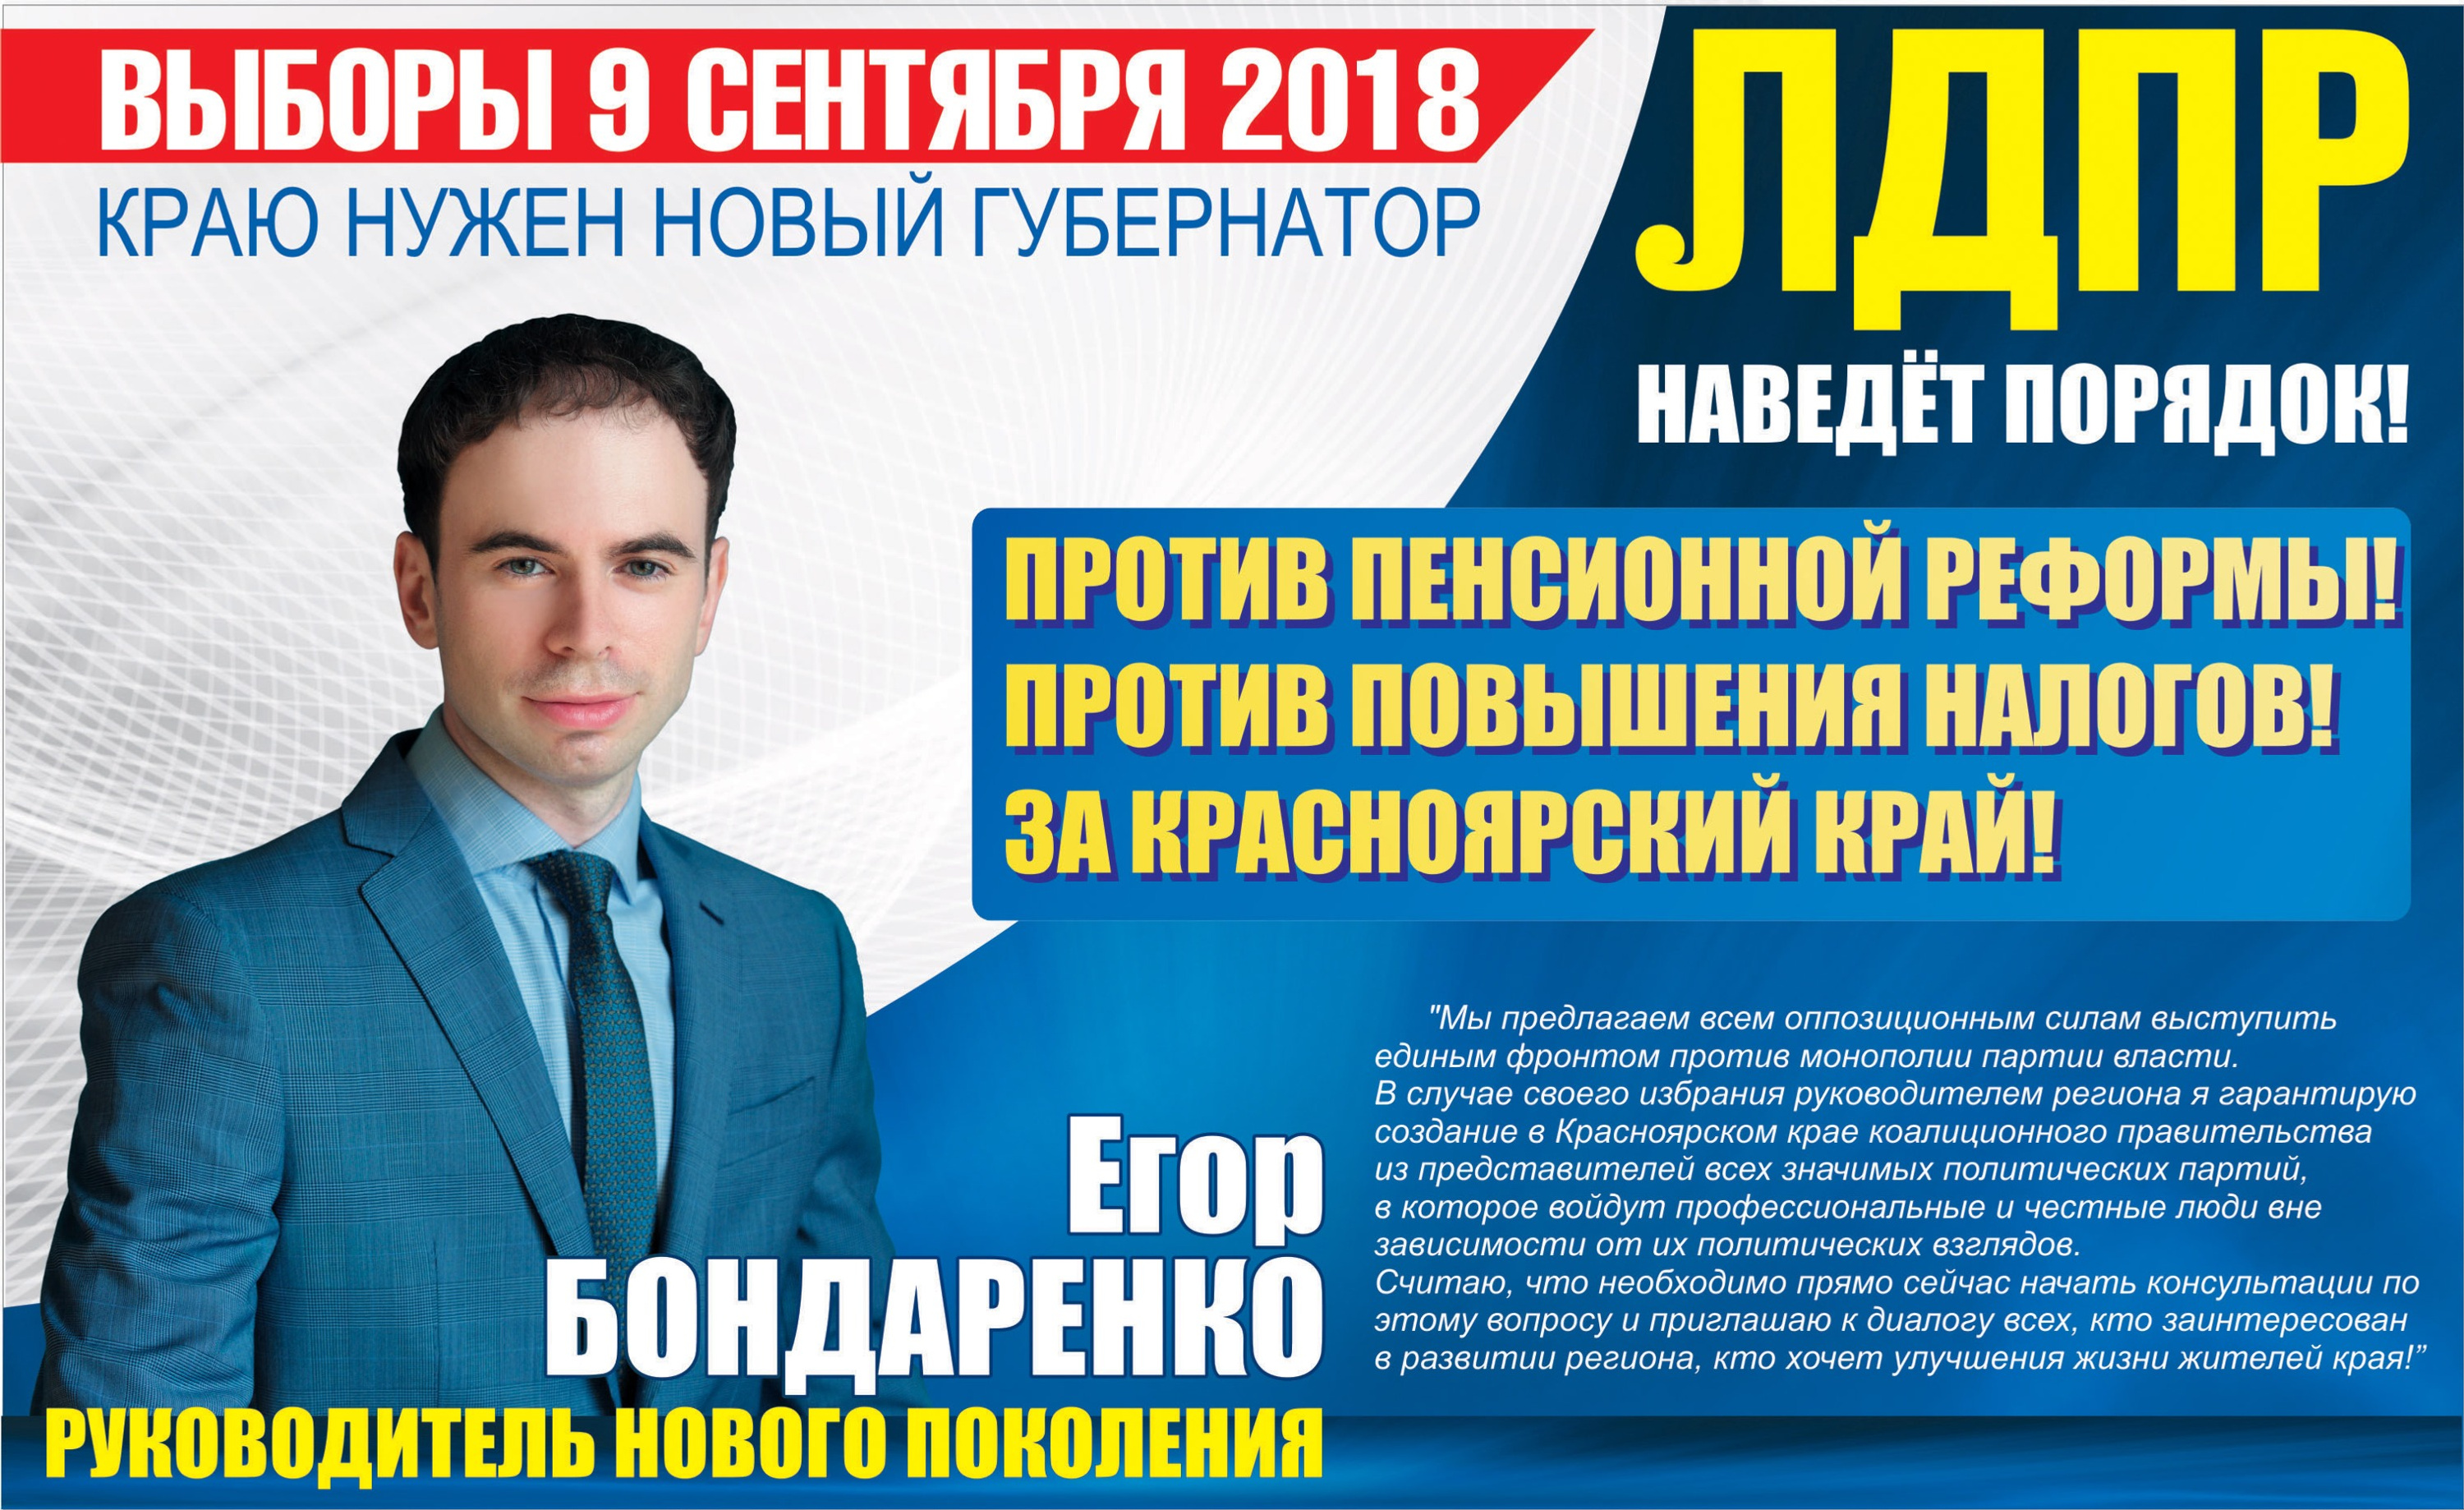 Листовка кандидата Бондаренко, которую можно найти только в интернете на официальном сайте ЛДПР